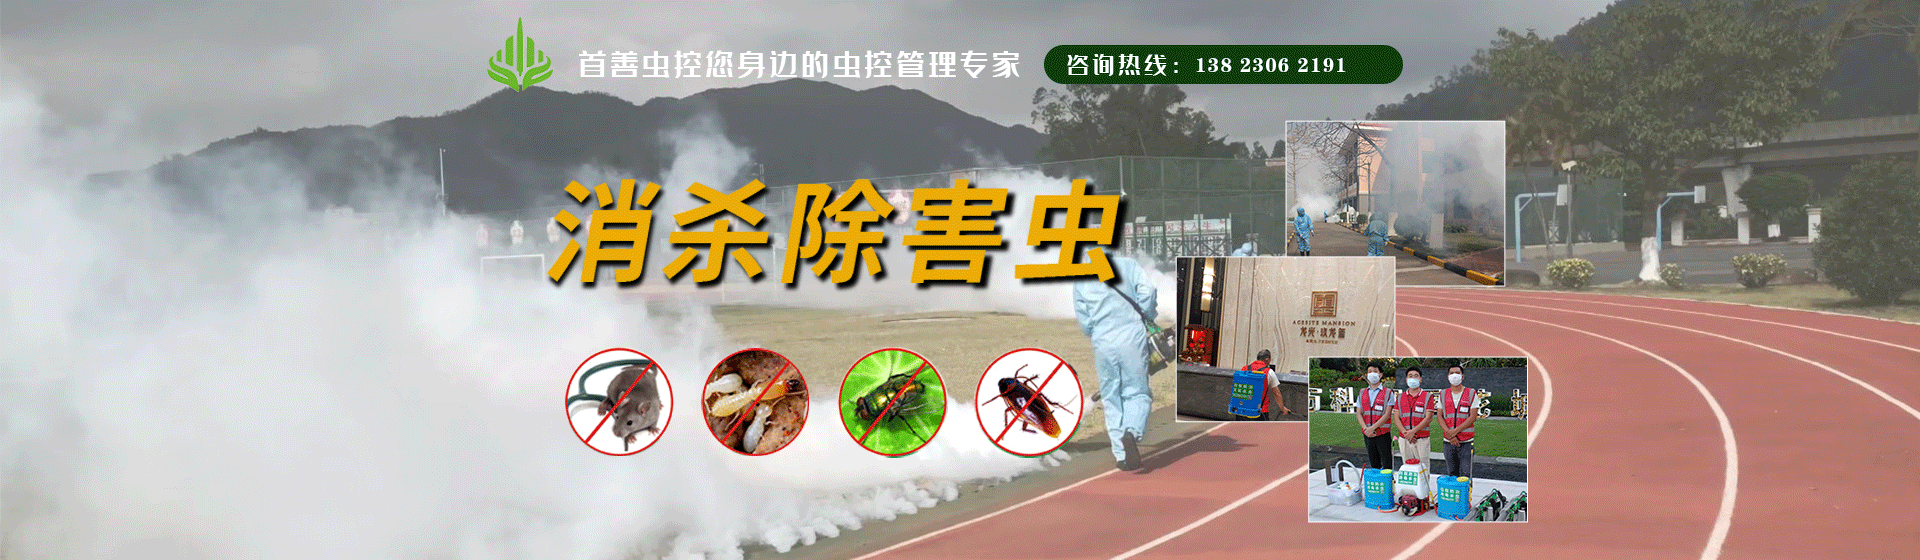 富山水质净化厂 - 白蚁防治案例 - 珠海市首善环境卫生服务有限公司